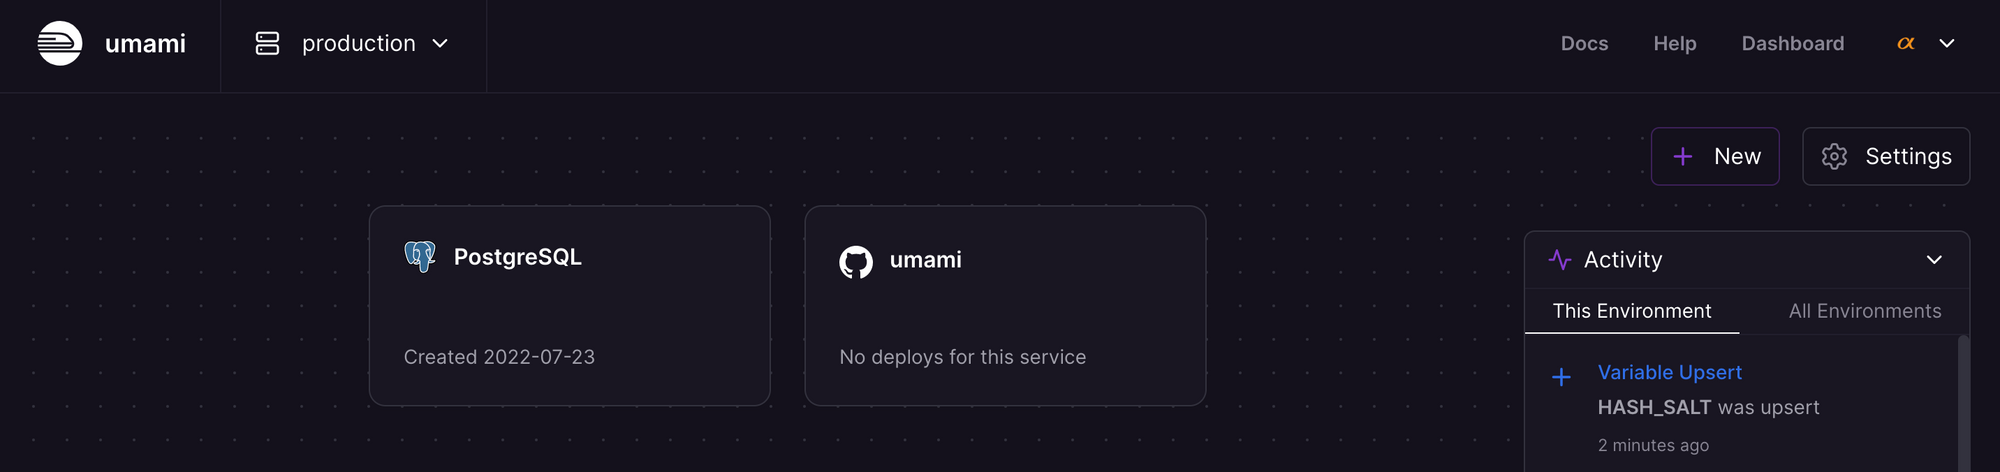 Umami service deployed